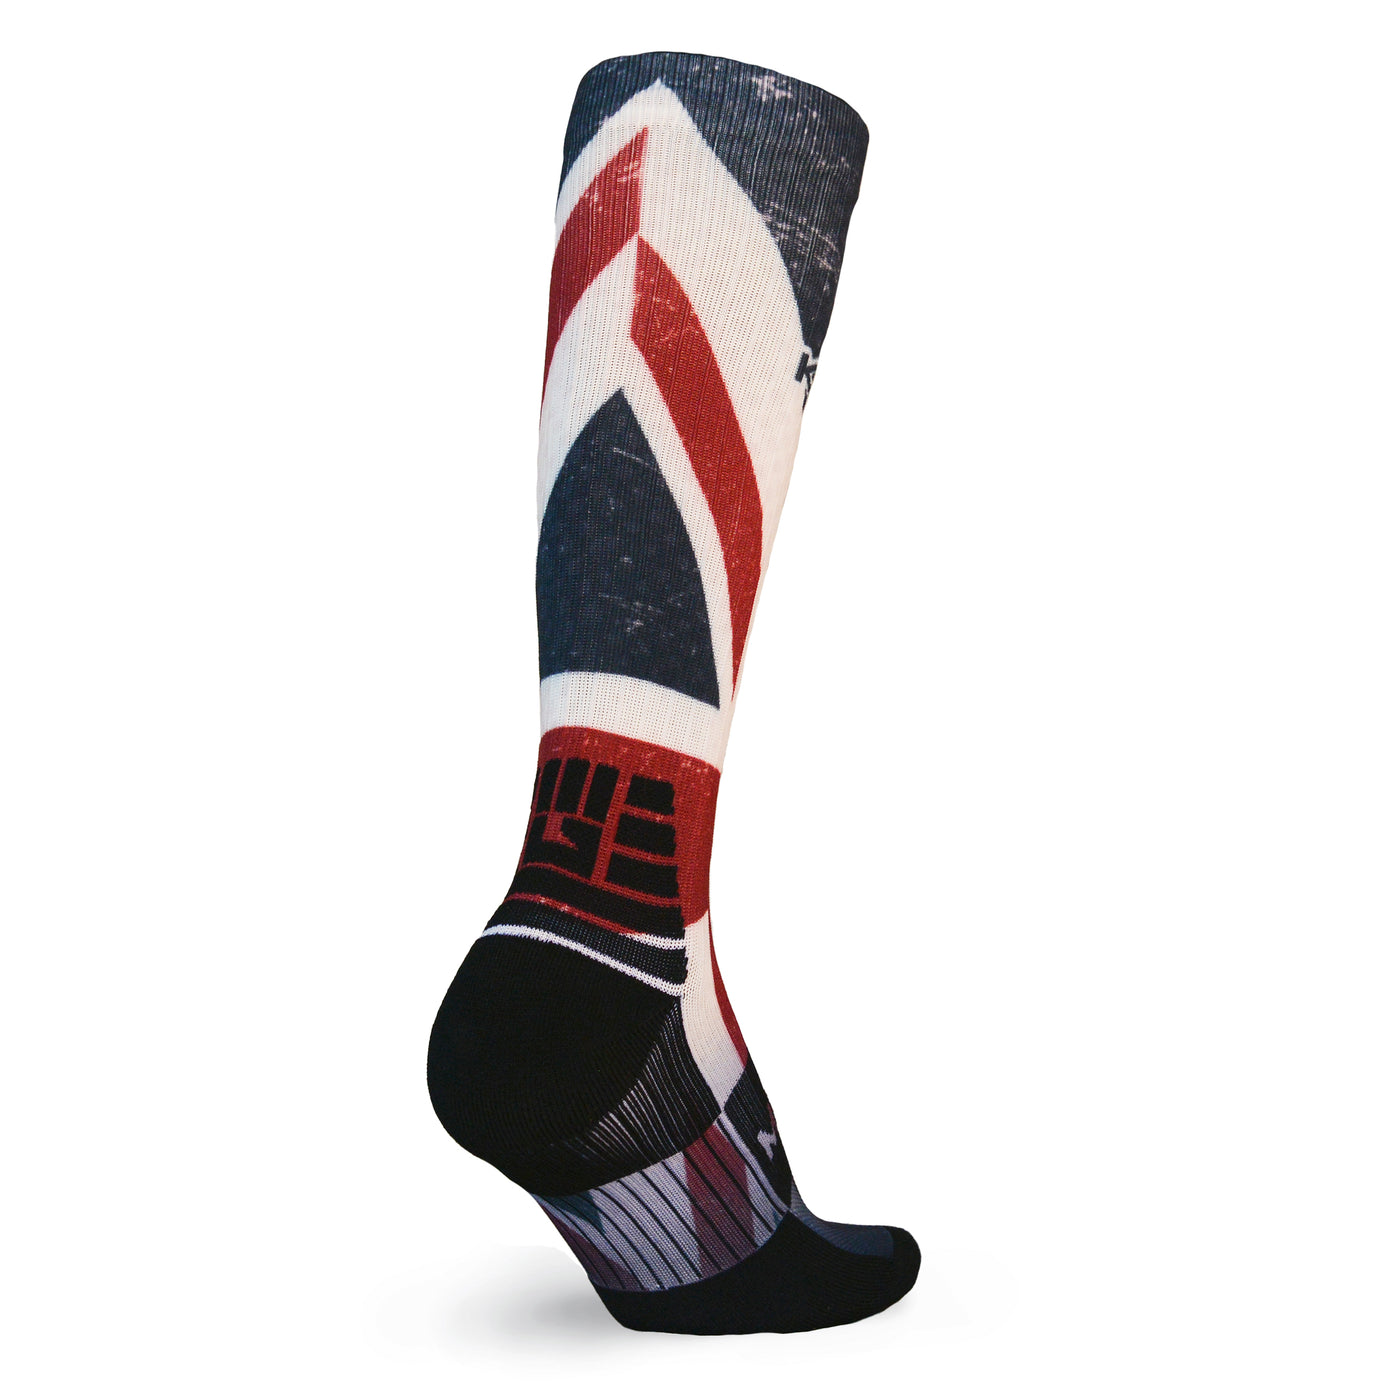 CLEARANCE ITEM - MudGear Custom UK Tall Compression Socks (1 Pair)